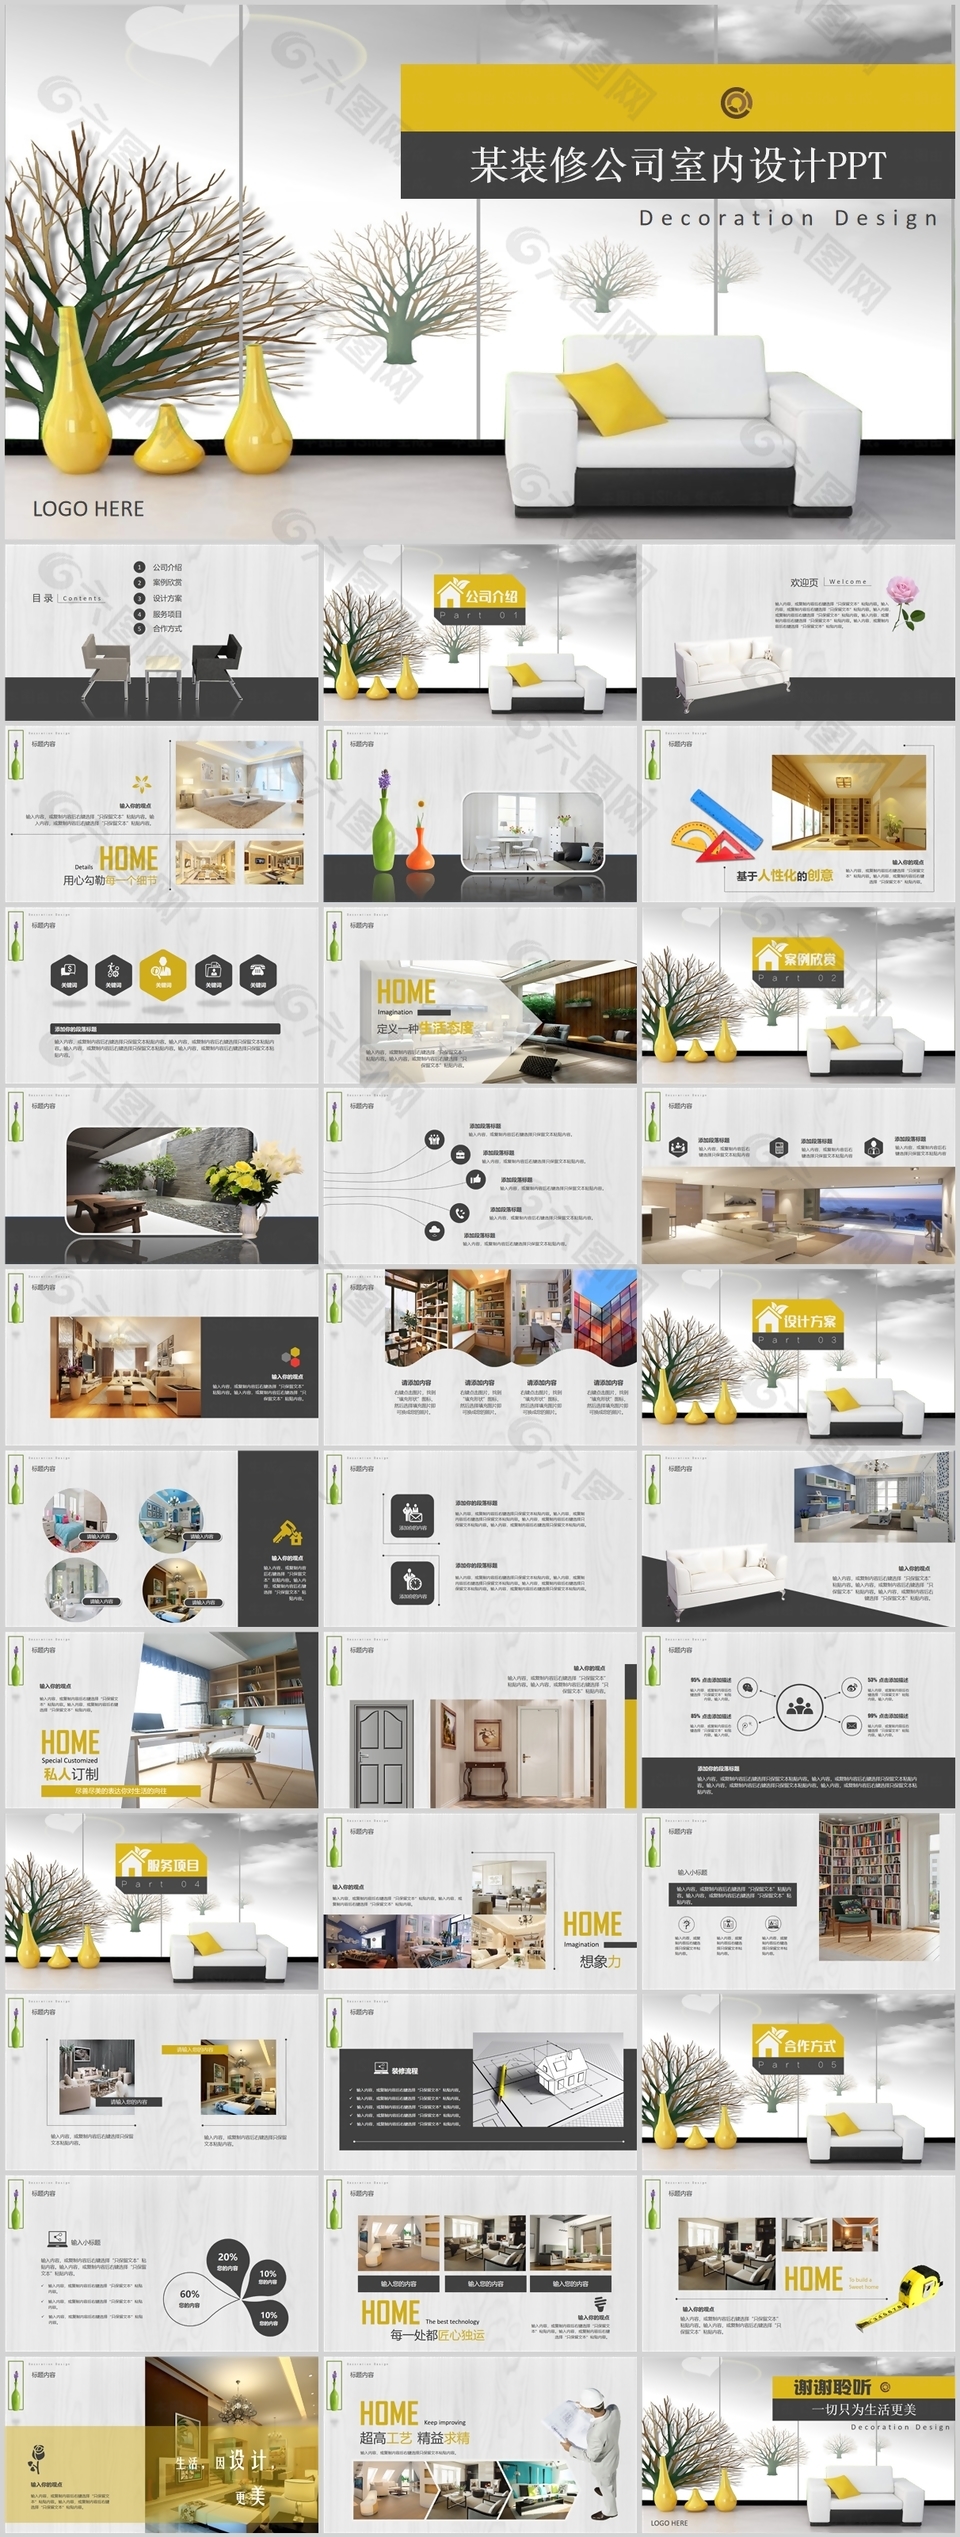 黄色简约实用室内设计企业宣传PPT模板